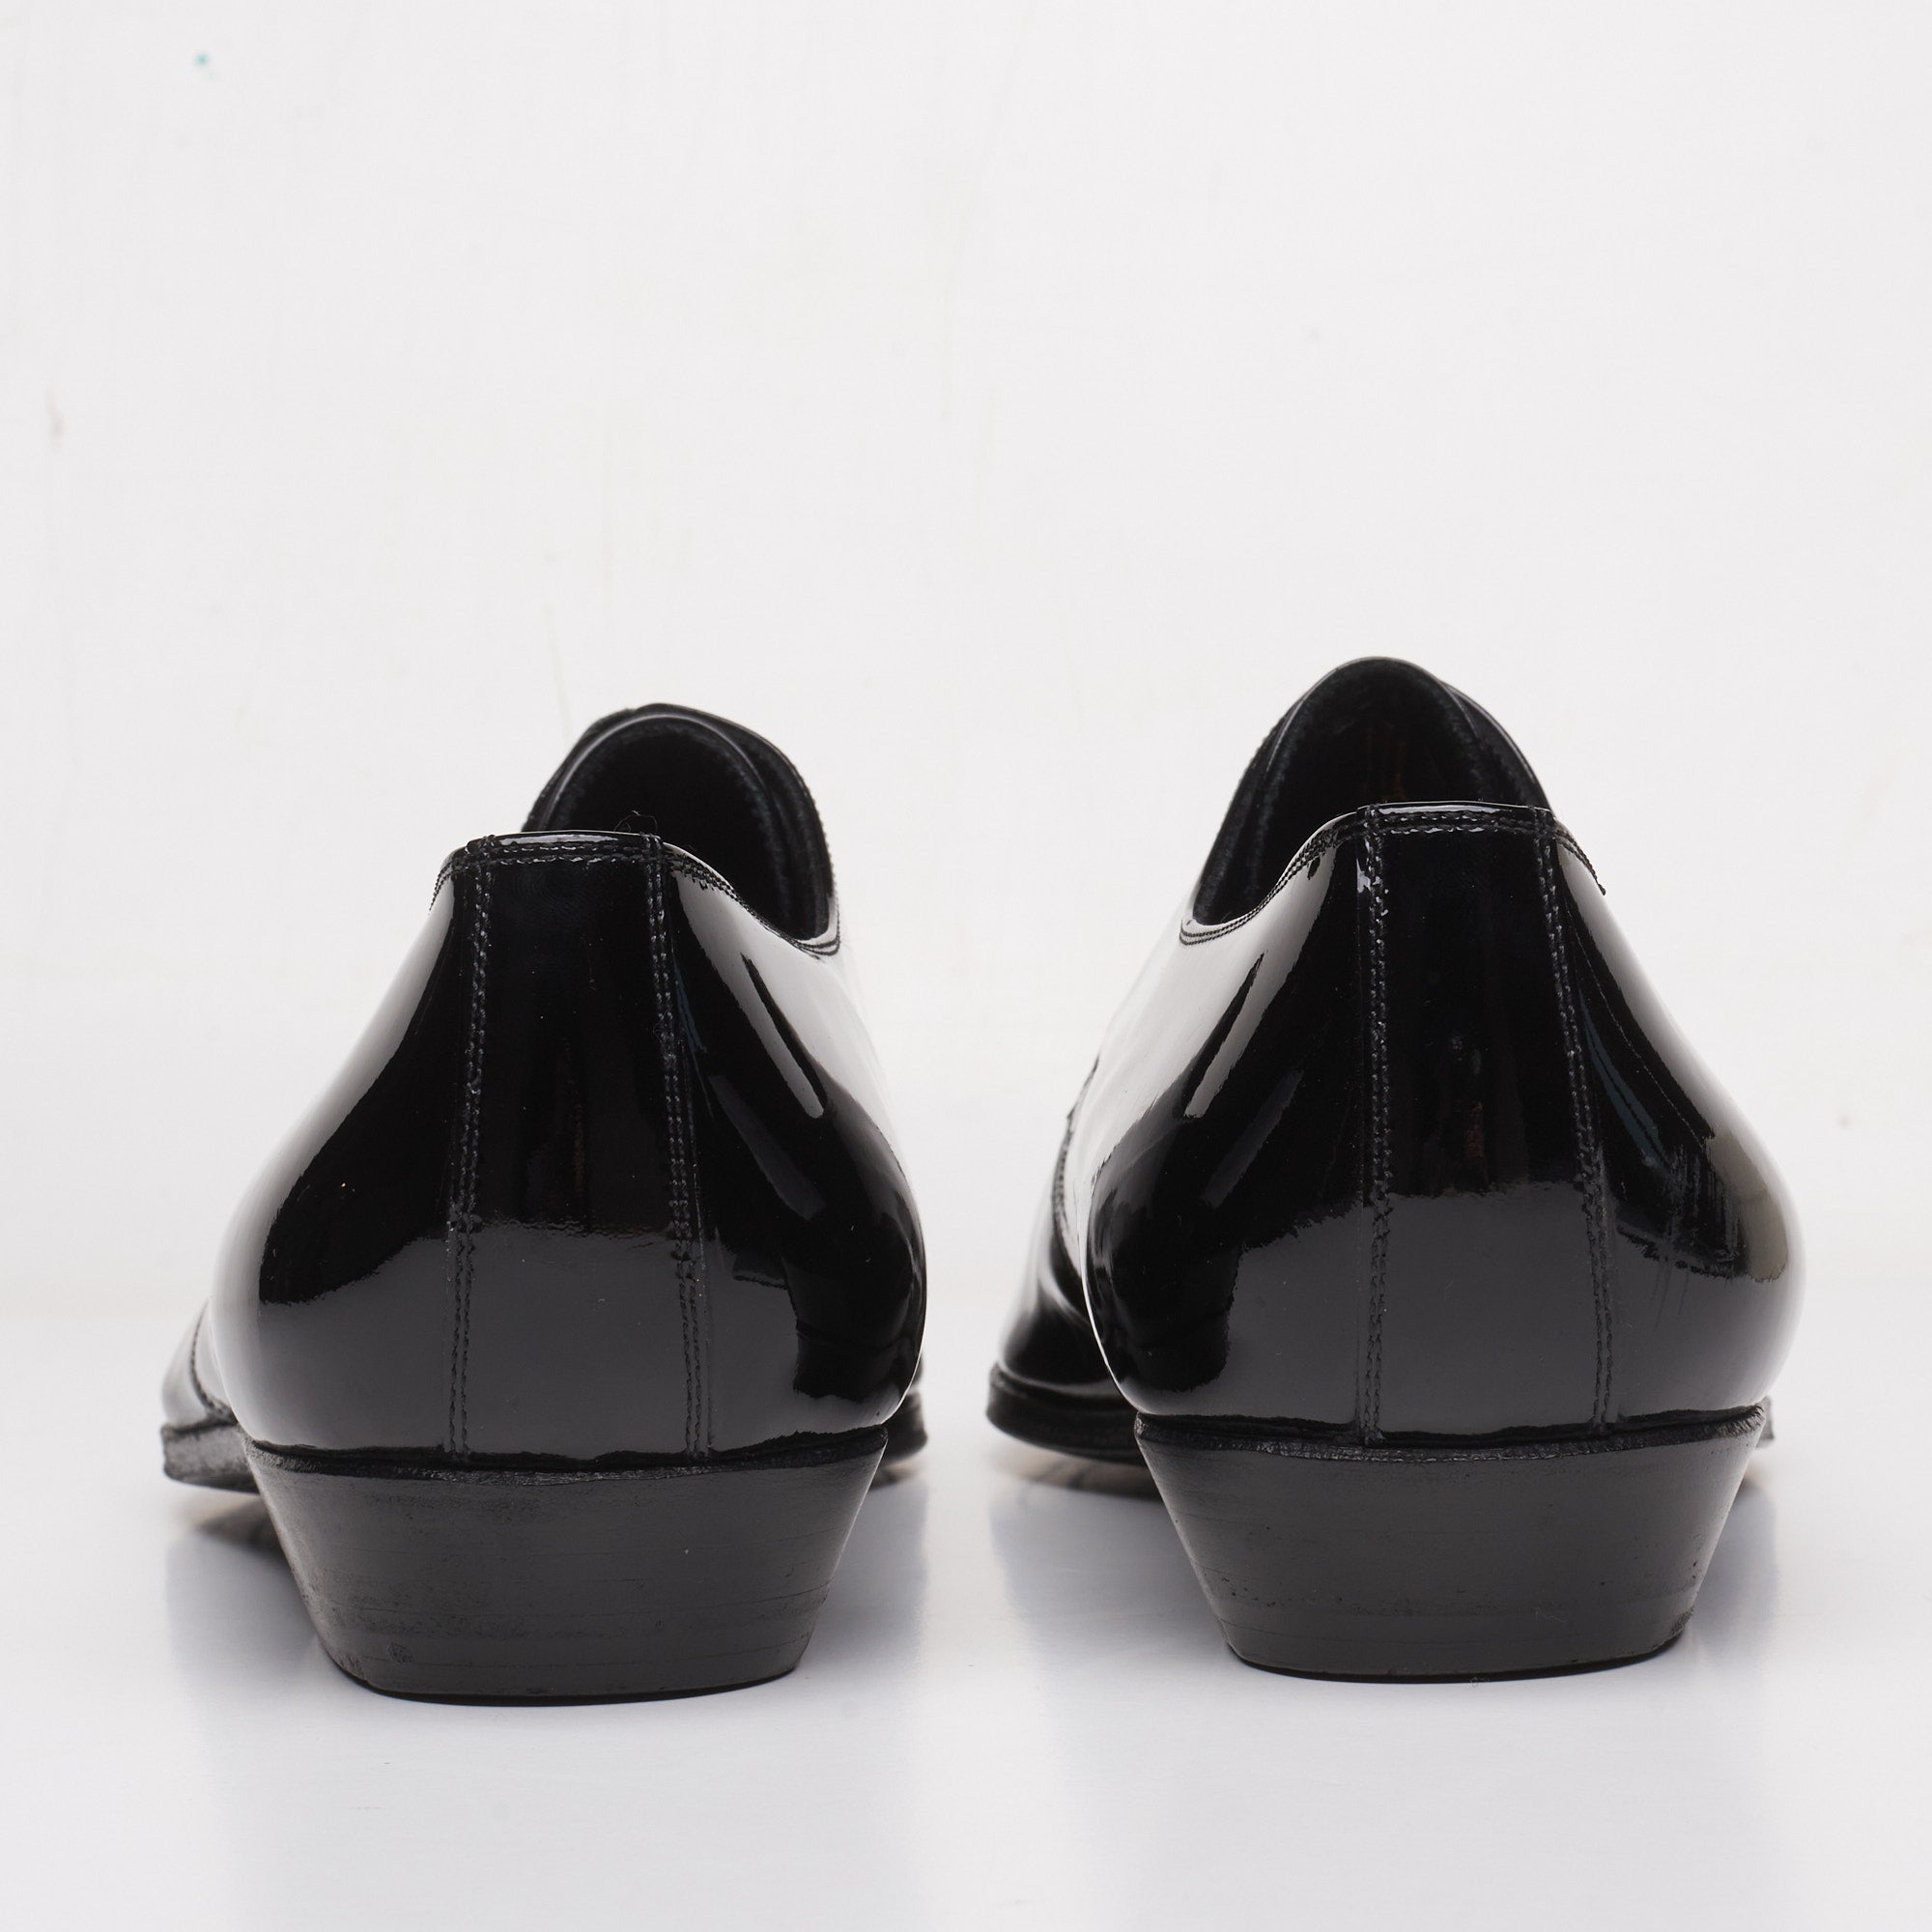 DIOR Défilé Black Patent Leather 2 Eyelet Derby Dress Shoes EU 42.5 NEW US 9.5 DIOR